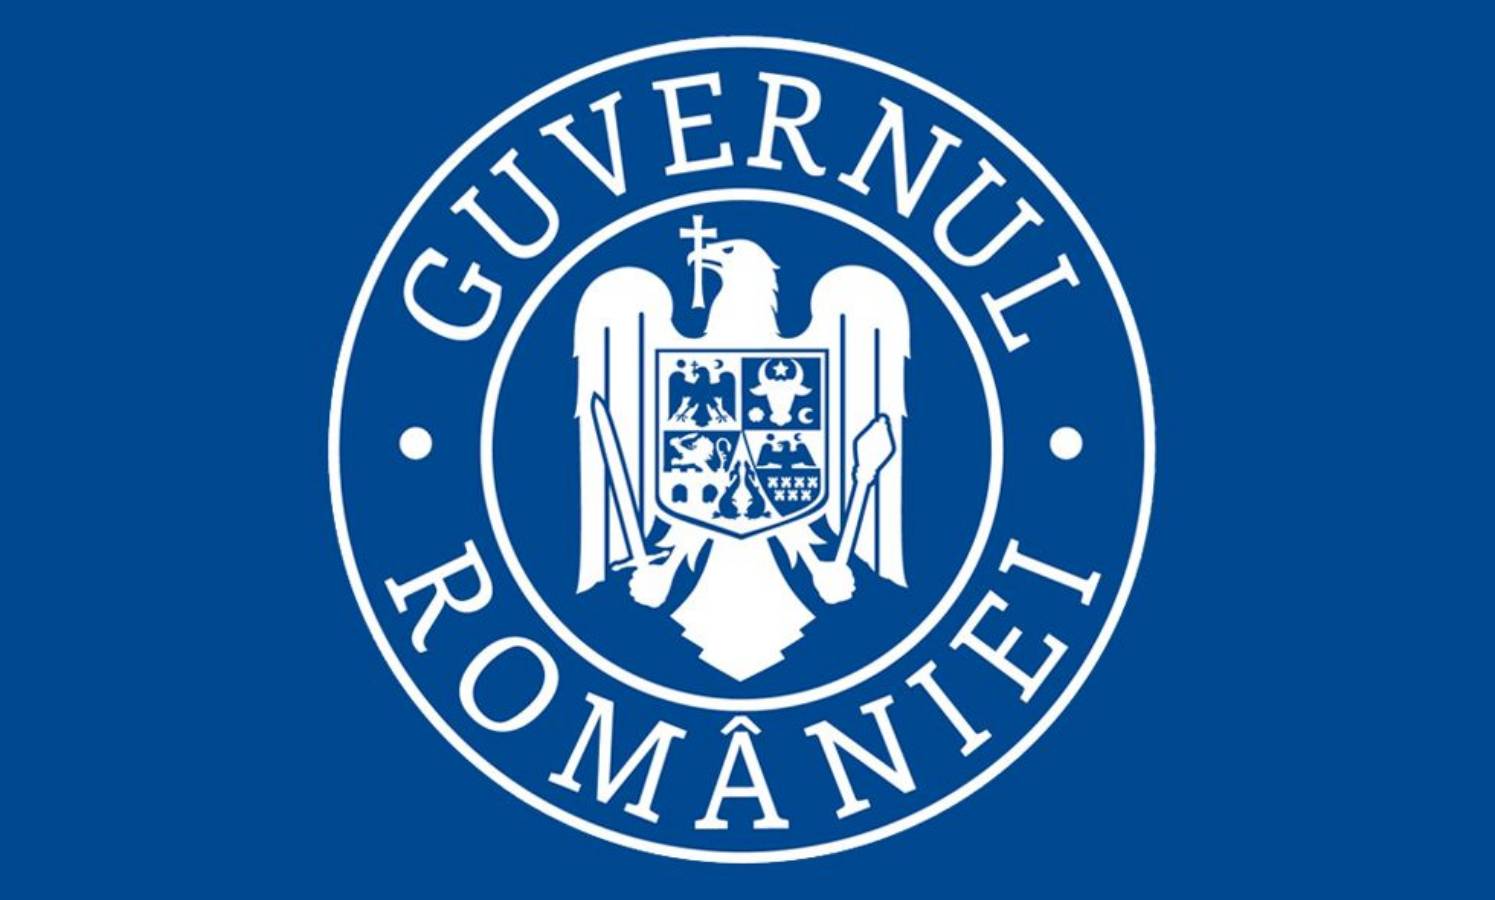 De Roemeense regering kondigt de opening van restaurants aan